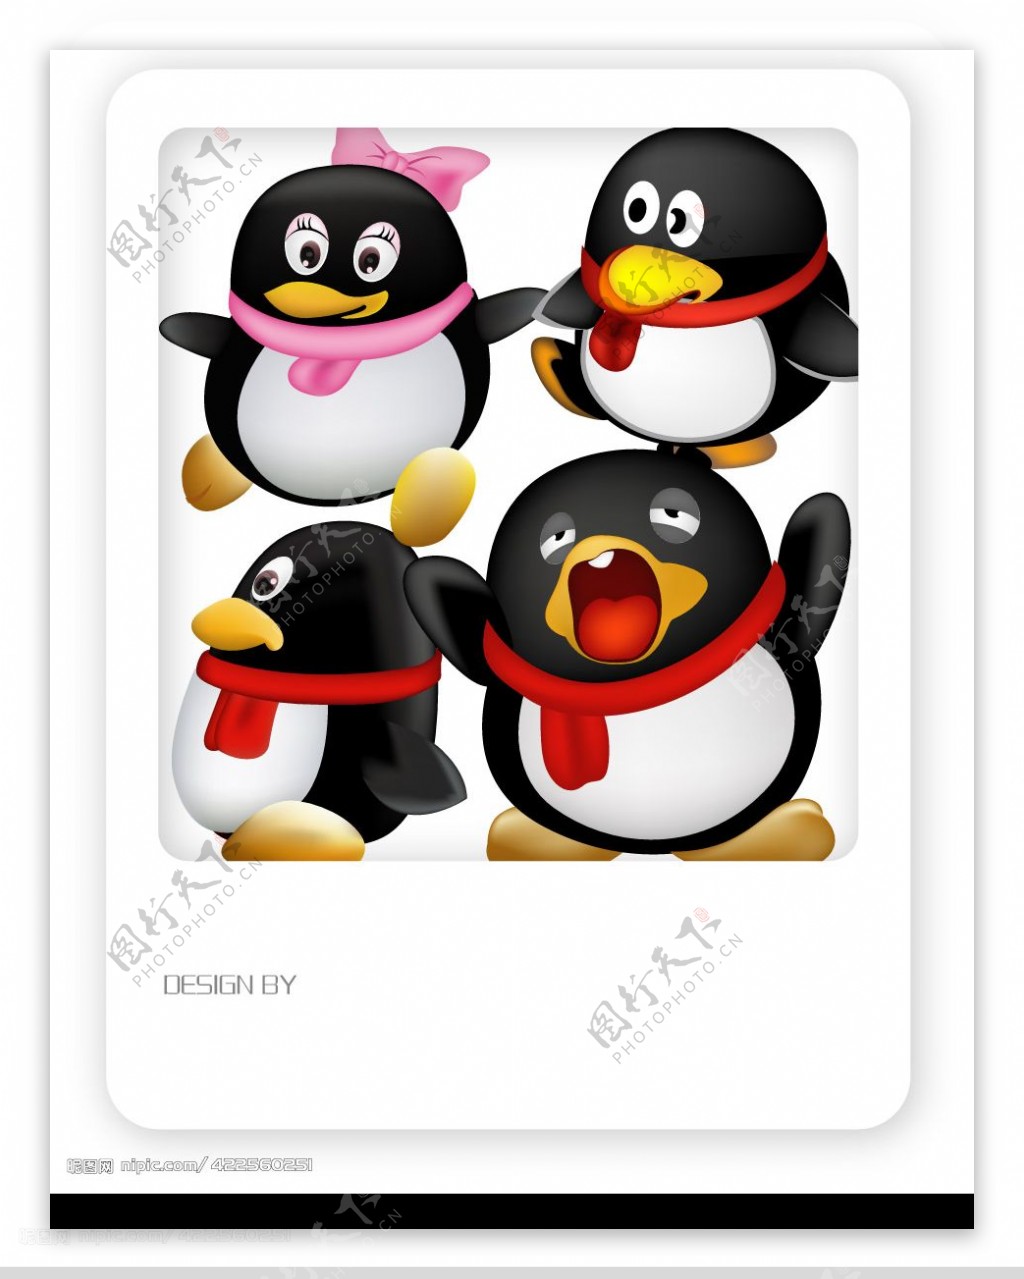 两只可爱的小企鹅3d电脑桌面壁纸-壁纸图片大全